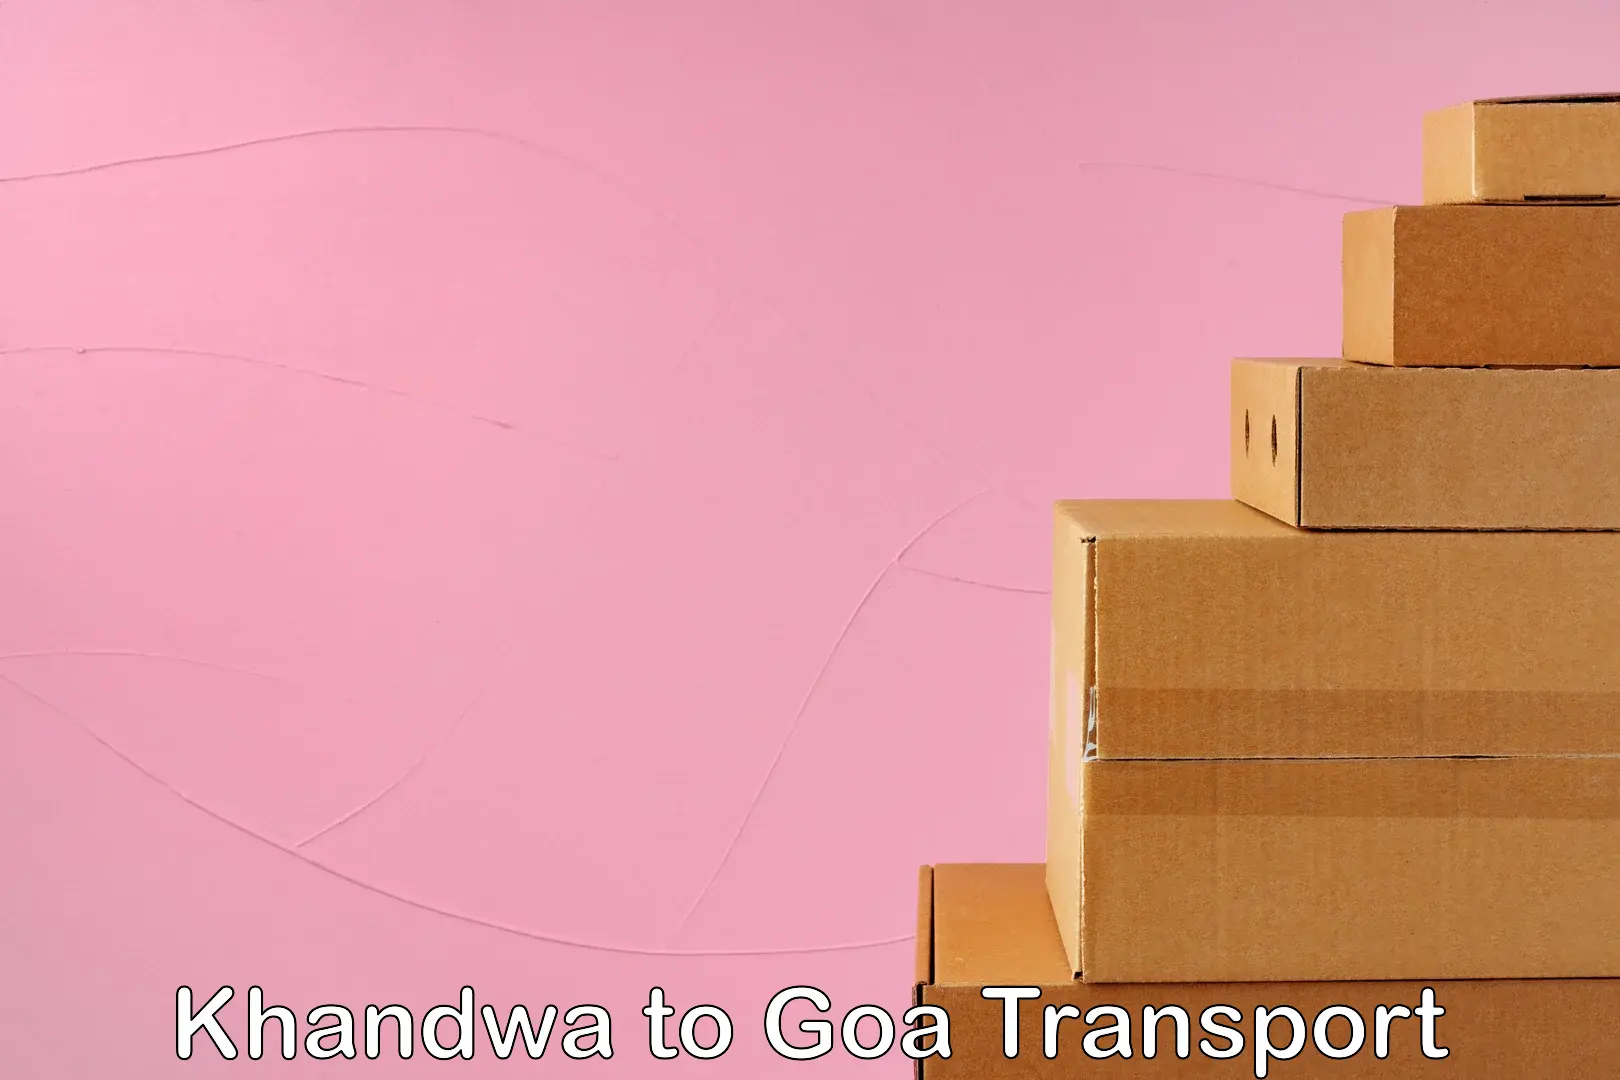 Daily transport service Khandwa to Goa